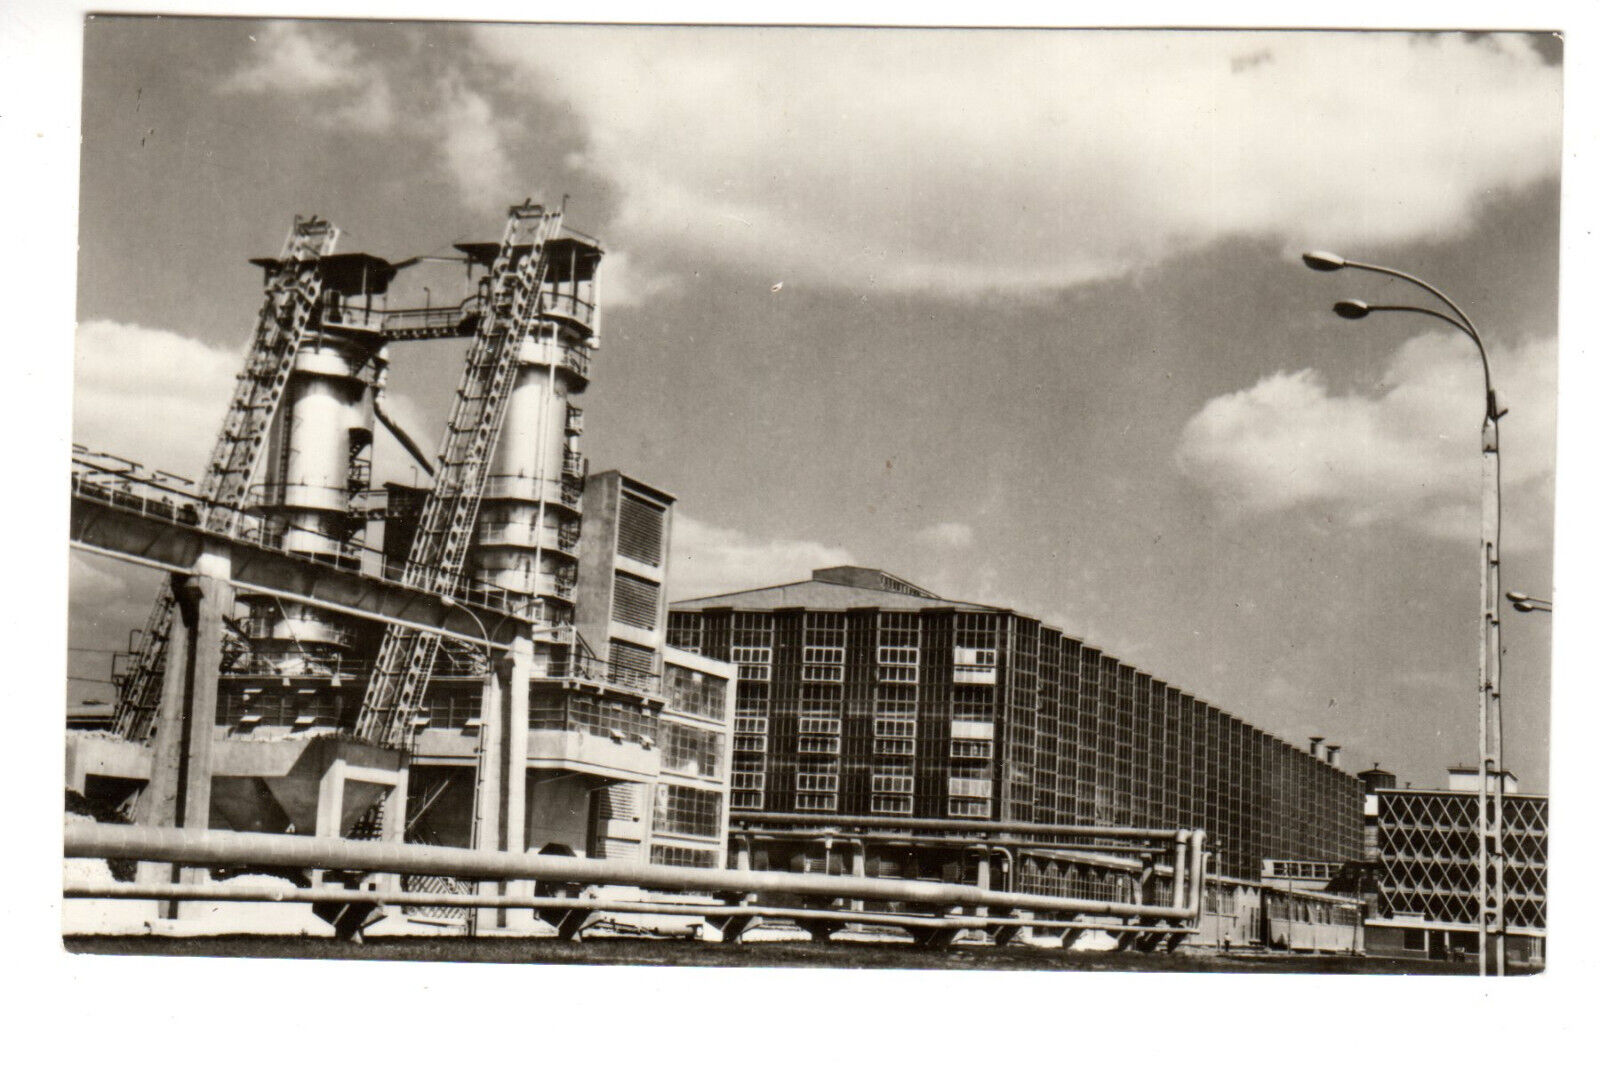 RPPC Postcard: Sugar factory, Buzau, Romania - architecture (Fabrica de zahar)